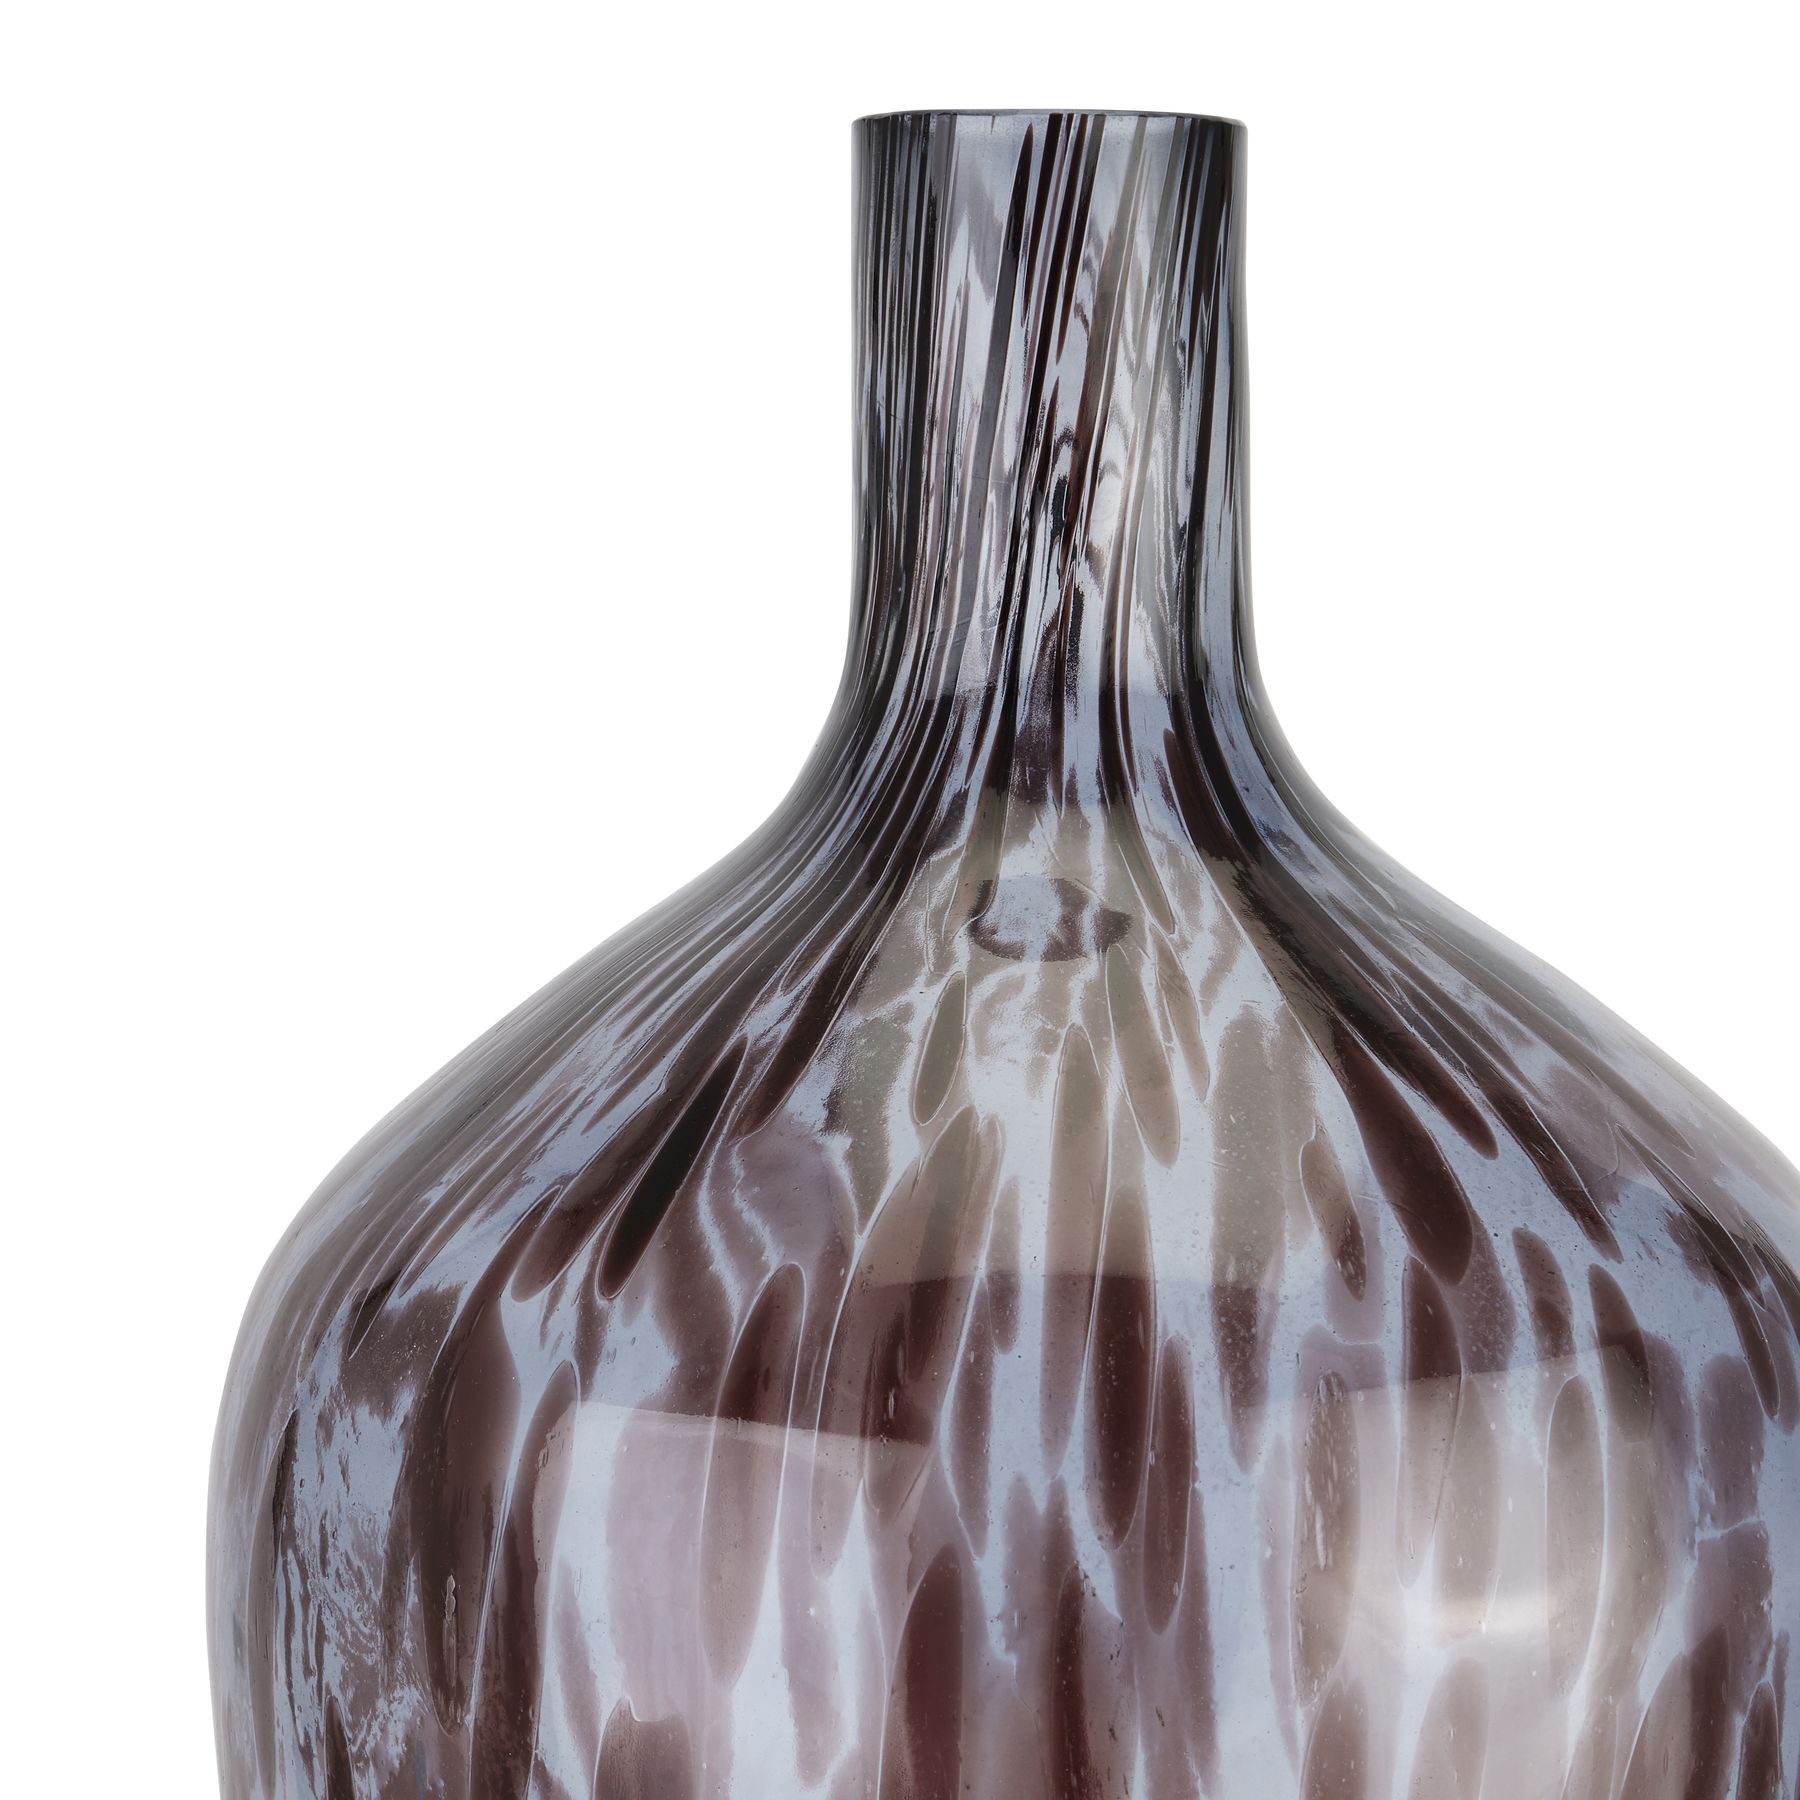 Black Dapple Bottle Vase - Image 2